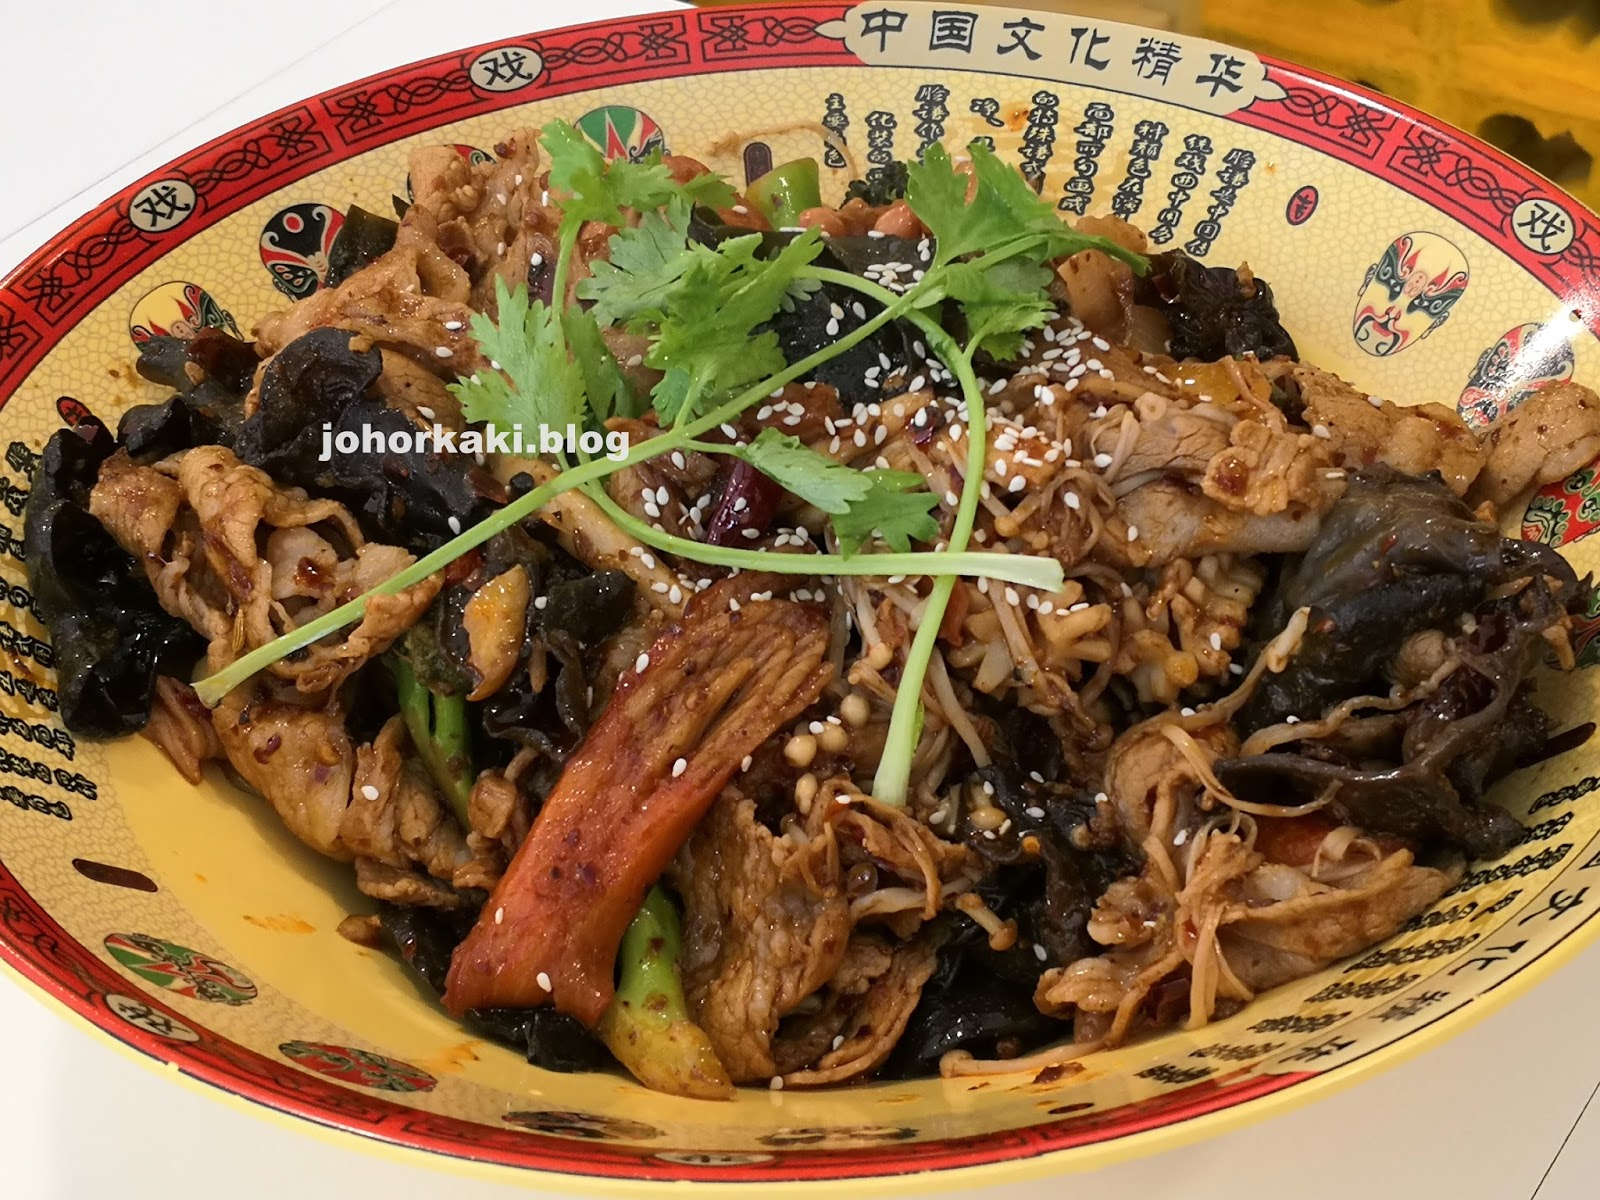 Tasty Hotpot. Spicy Sichuan Mala Xiang Guo in JB 有点香麻辣香锅 |Tony Johor ...